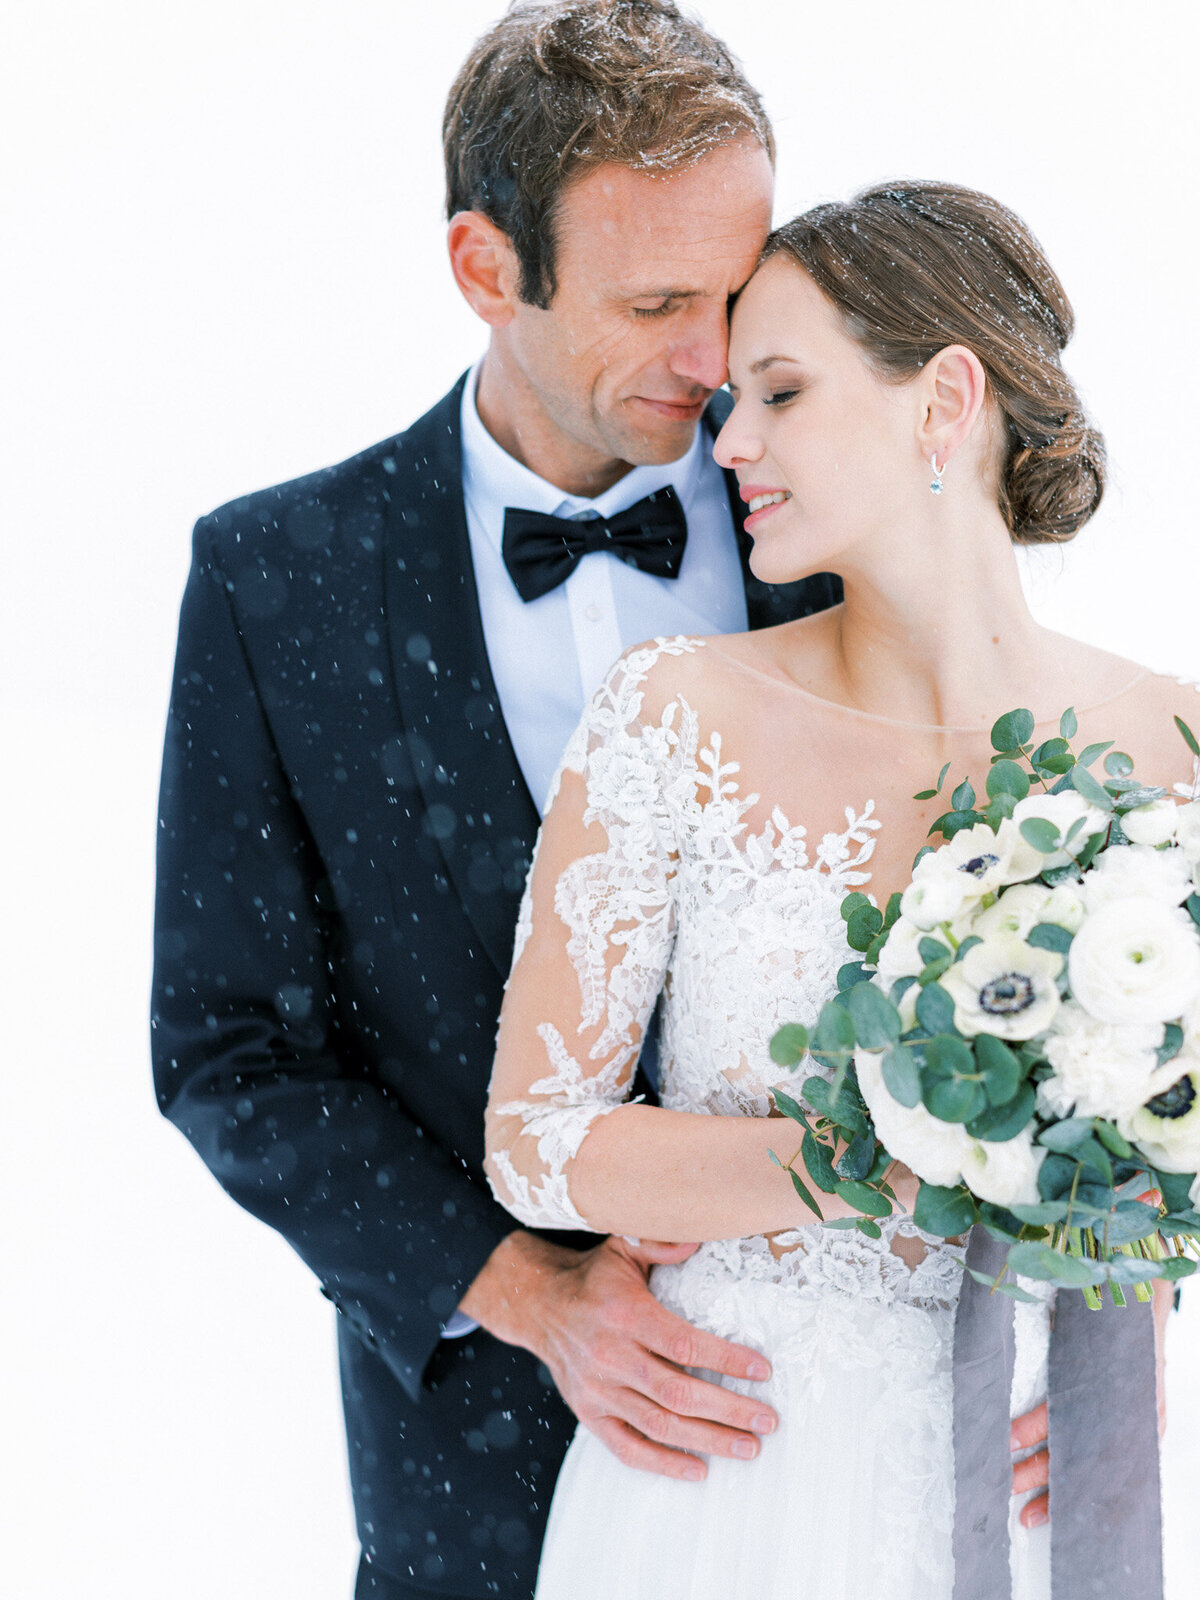 34-Elegant-Winter-Wedding-by-Tony-Gigov-Photography